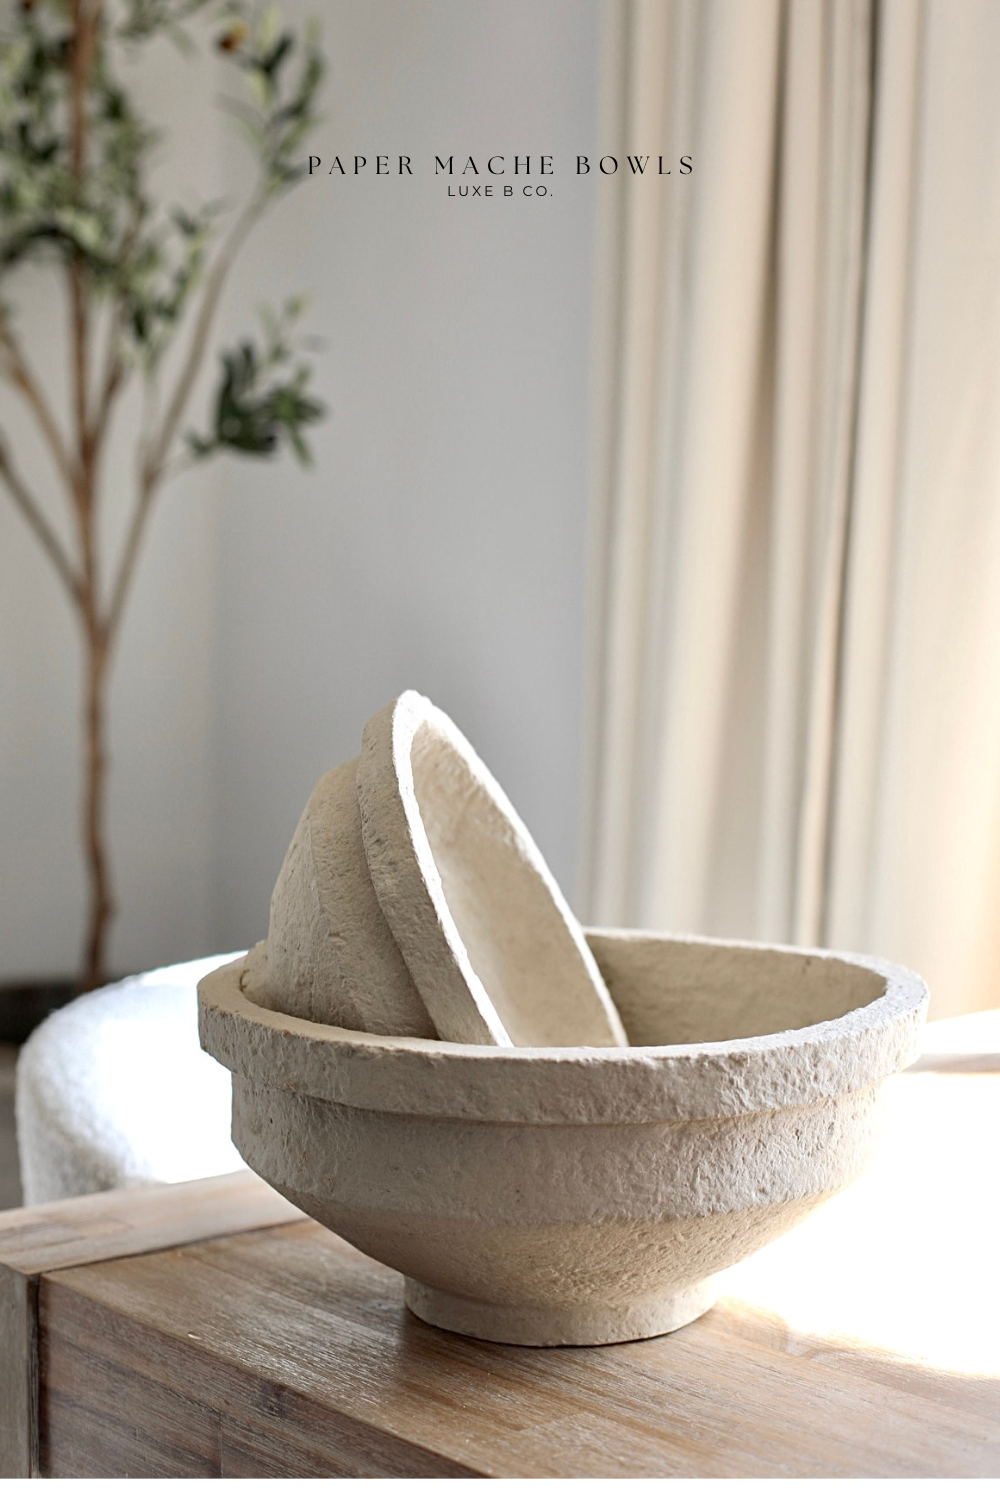 Paper Mache Bowls - Luxe B Co Vintage Home Decor Shop Luxe B Co Instagram